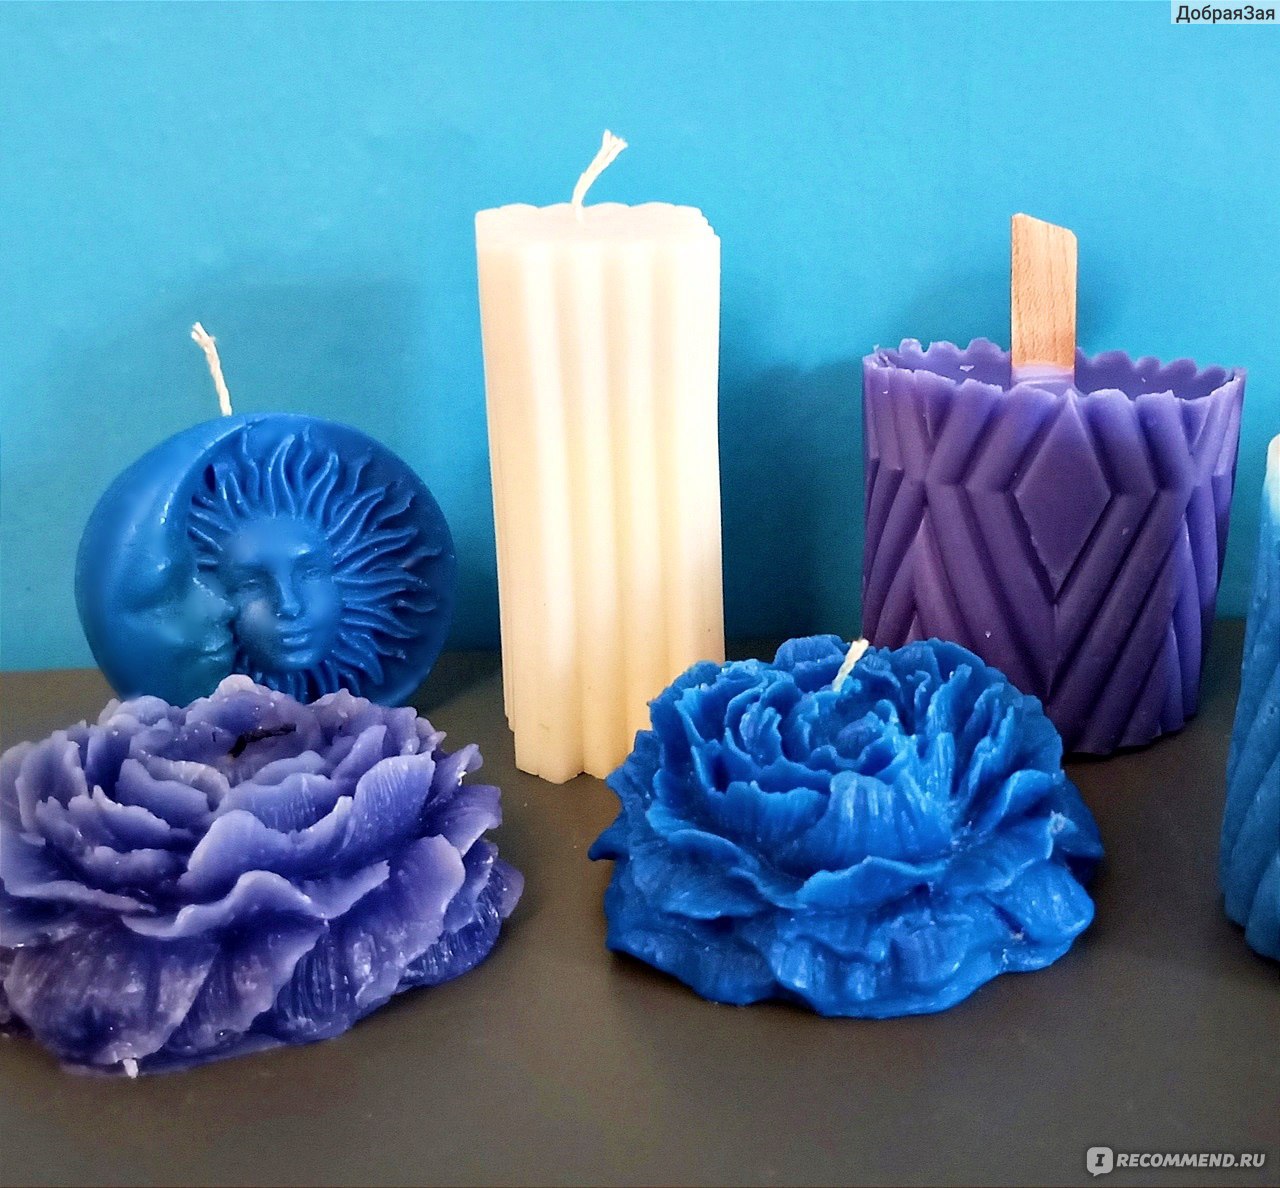 Декоративные свечи – украшение для дома и подарок своими руками